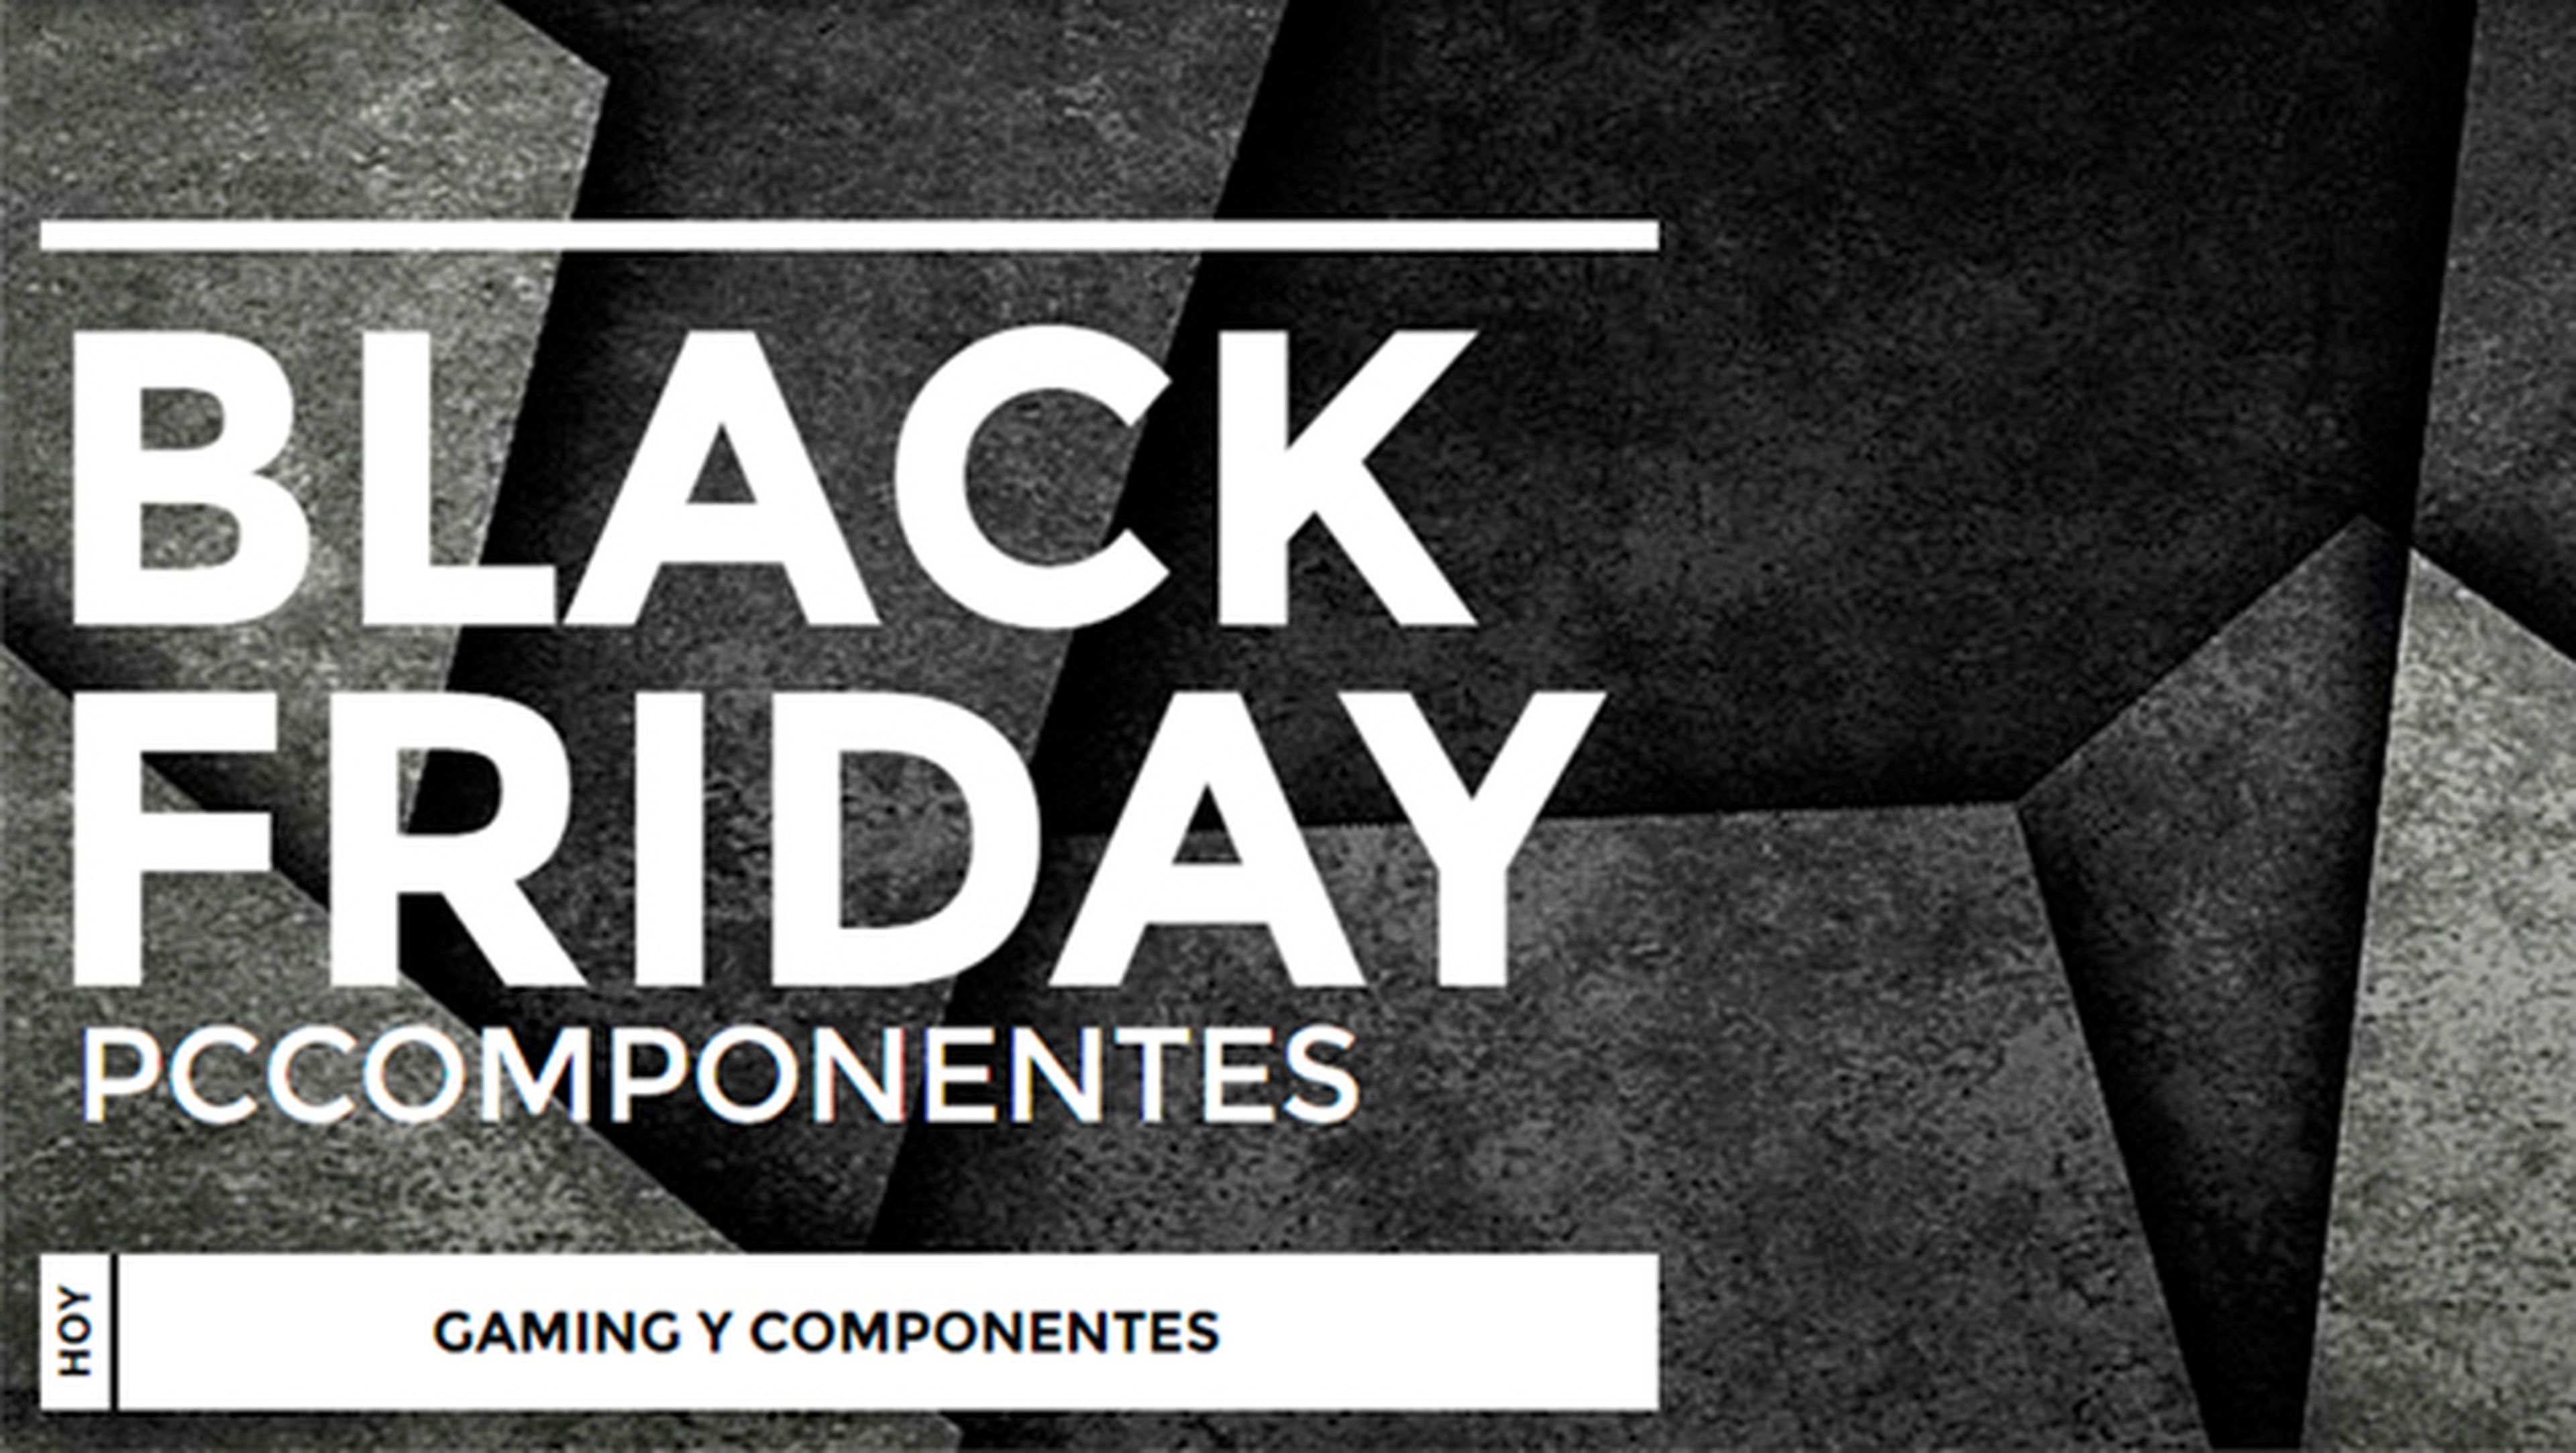 Black Friday en PcComponentes: especial gaming y componentes